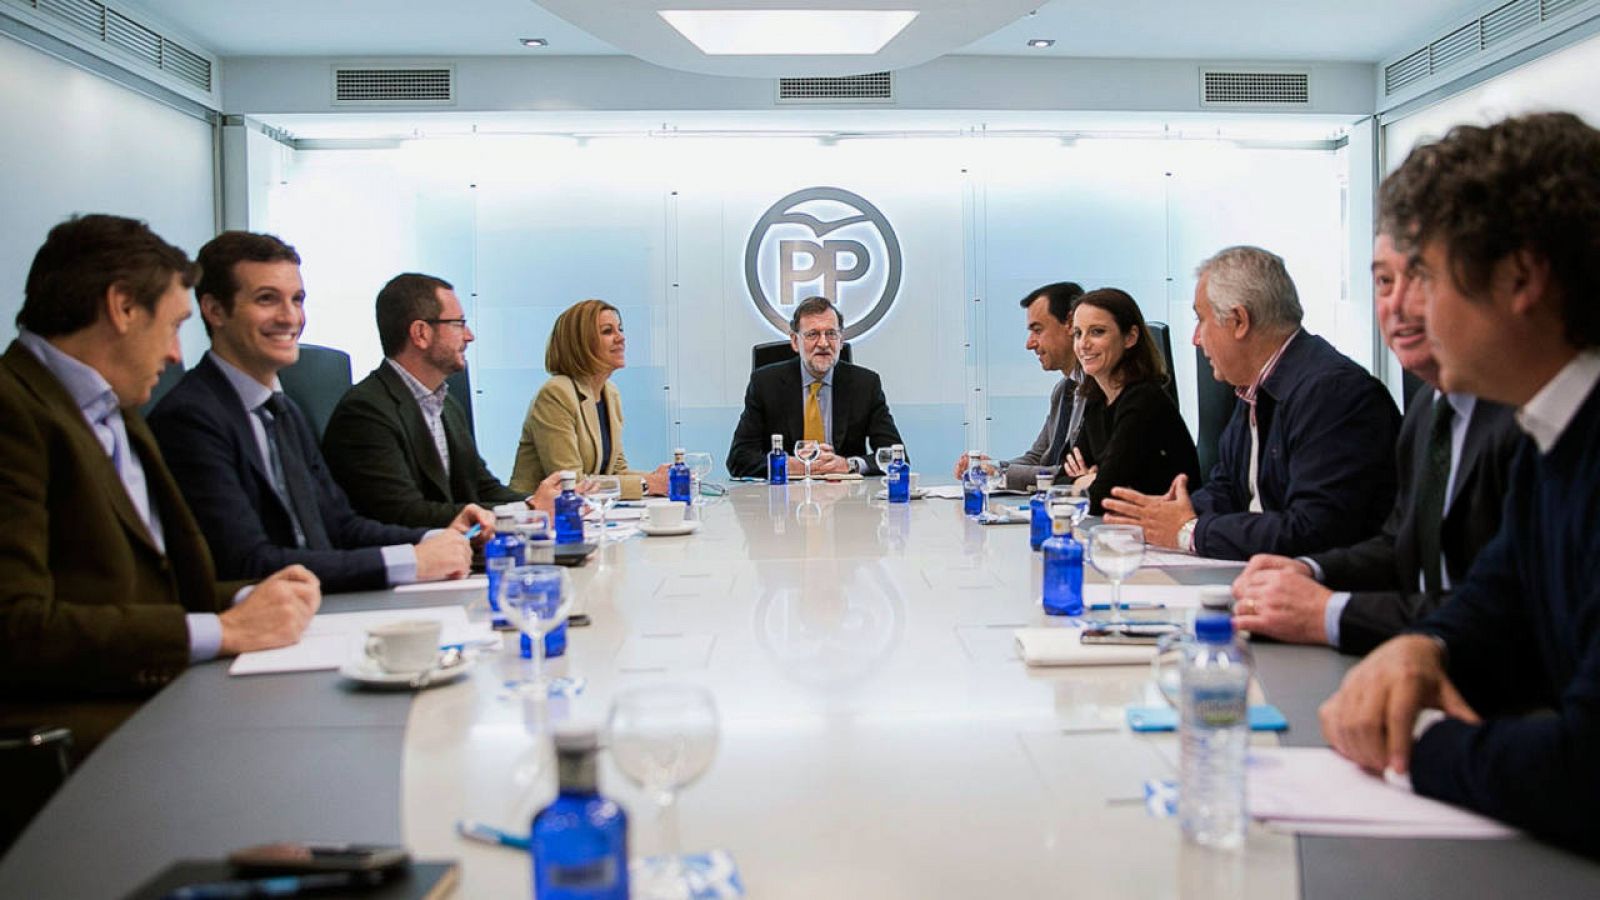 Mariano Rajoy preside el Comité de Dirección del PP en la sede del PP de Madrid este lunes 11 de abril 